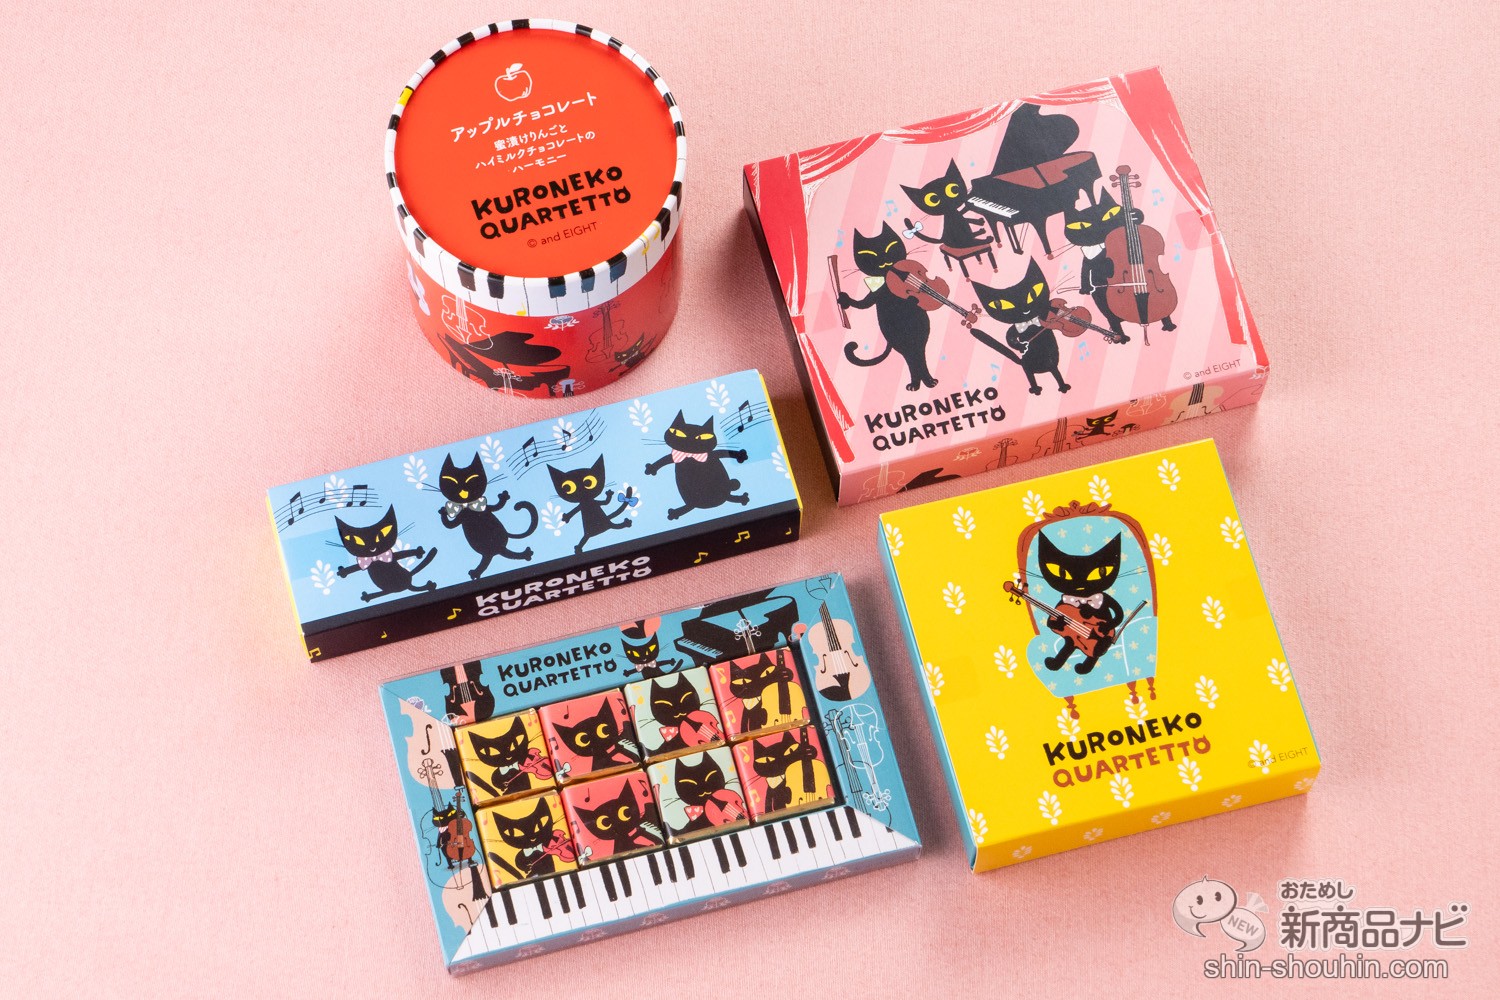 黒猫のパッケージにキュン Kuroneko Quartetto はバレンタインの友チョコにもおすすめ おためし新商品ナビ